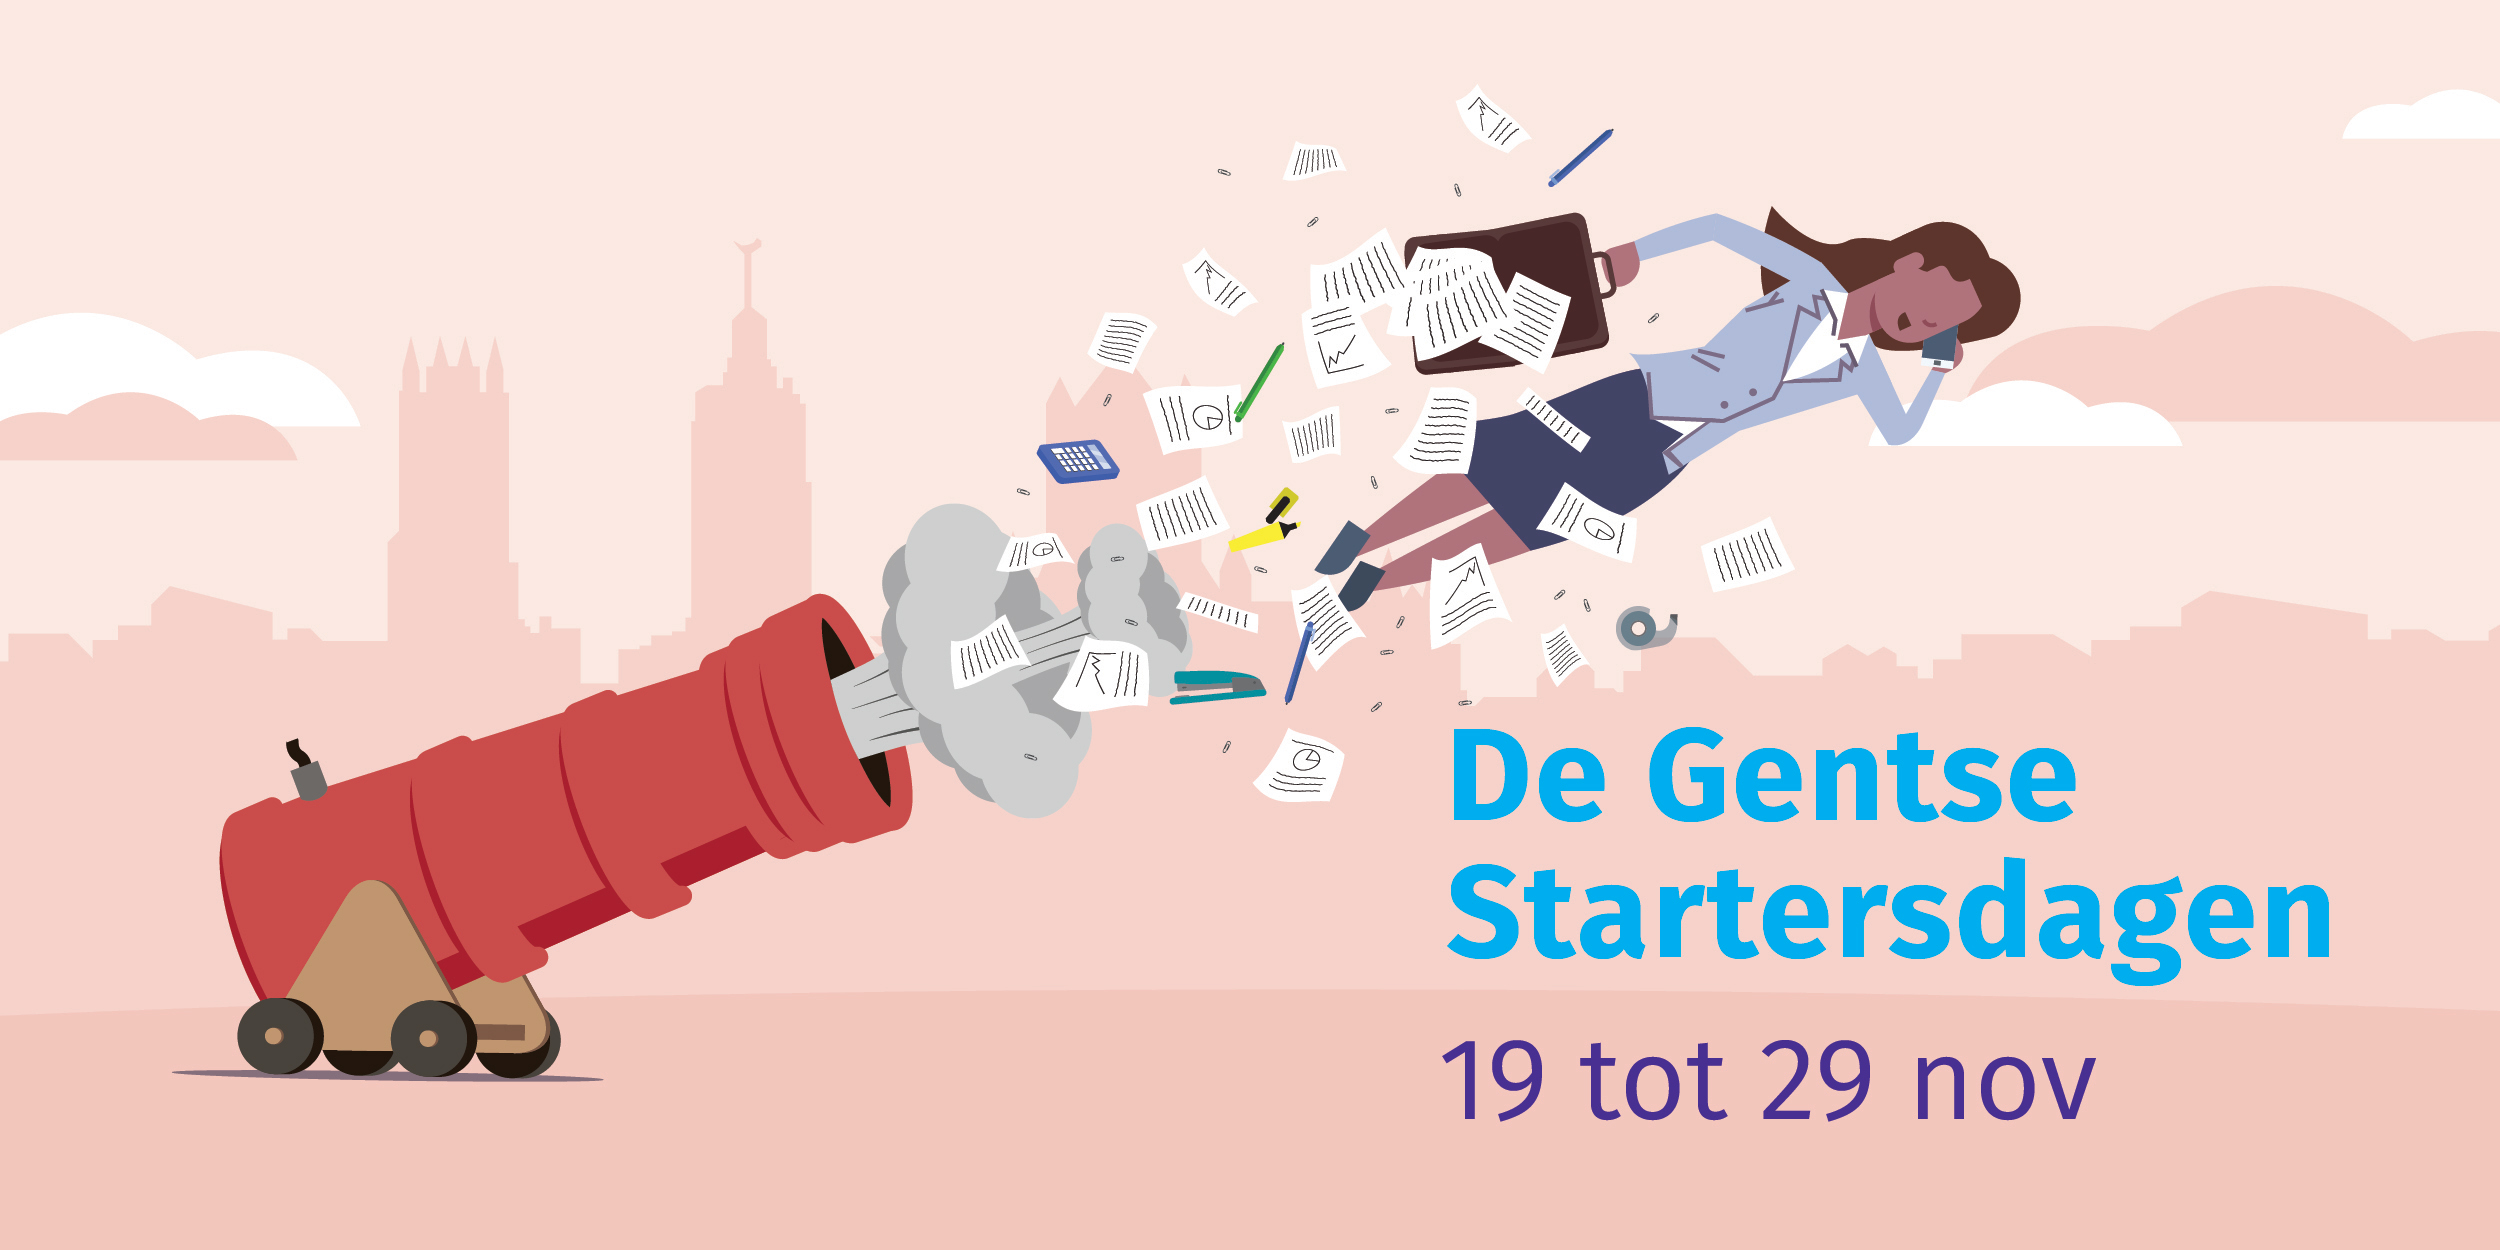 De Gentse Startersdagen: lanceer de ondernemer in jezelf